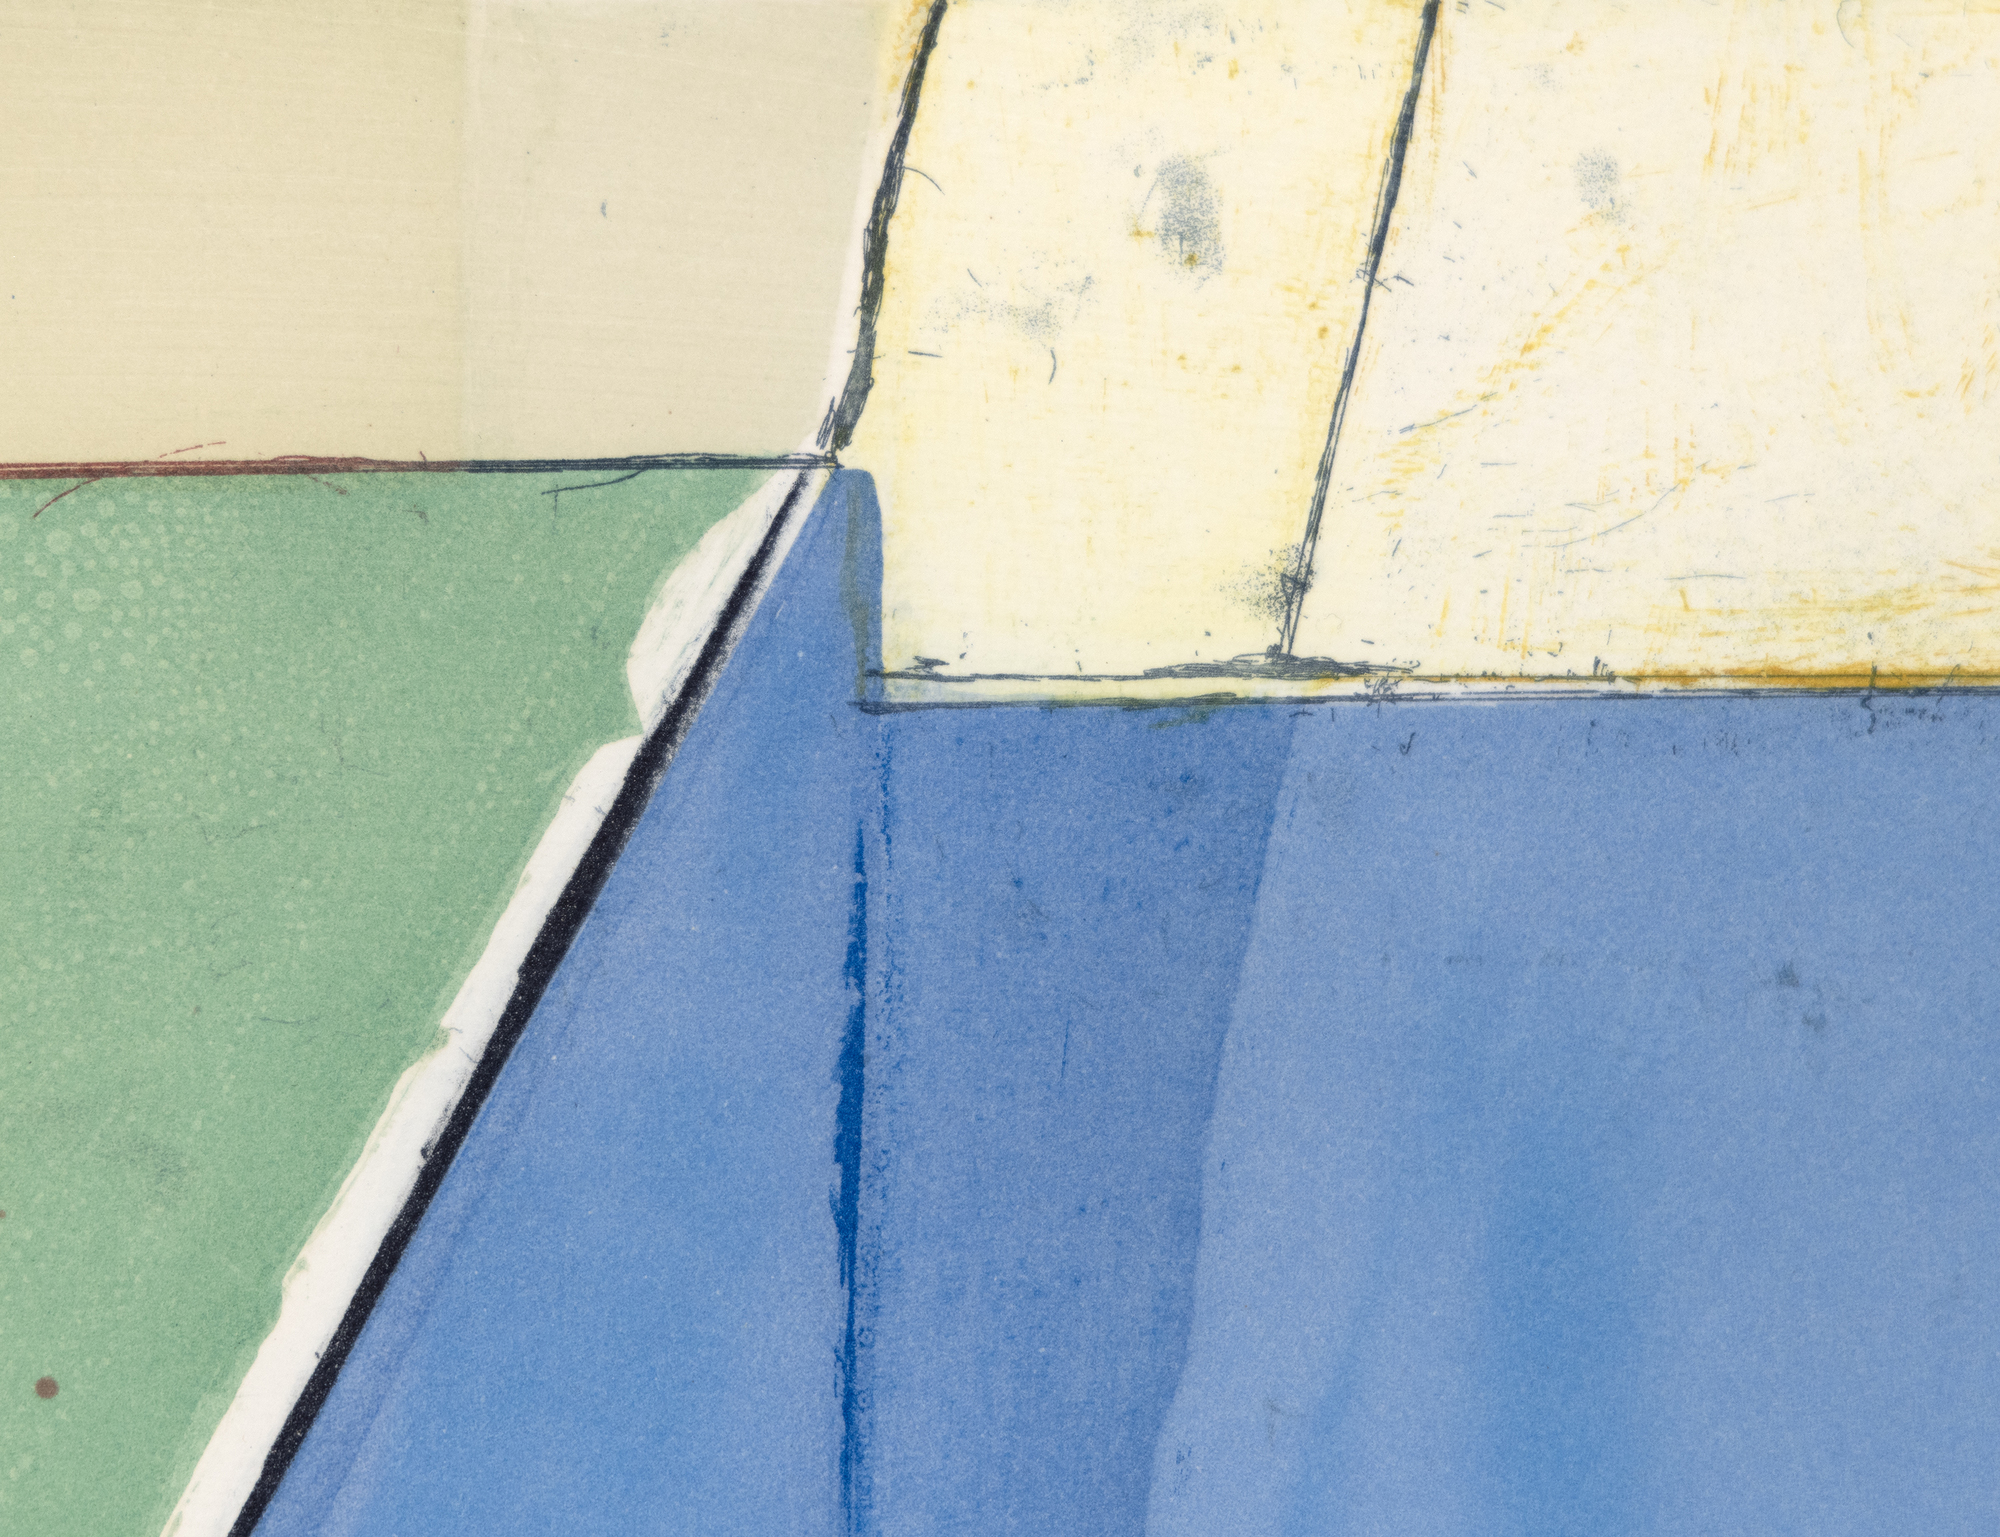 La serie Ocean Park de Diebenkorn evoca el delicado equilibrio de luz y color del artista, su meditada composición y la sutil integración de elementos paisajísticos, todo lo cual simula el ambiente costero de su estudio en Santa Mónica. A principios de la década de 1990, Diebenkorn retomó los temas y las sensibilidades estéticas de la serie Ocean Park aprovechando diversas técnicas de grabado para ampliar su exploración del lenguaje abstracto que desarrolló en sus pinturas. &quot;High Green, Version I&quot; ejemplifica esta búsqueda, sugiriendo las estrategias compositivas, la paleta y las preocupaciones espaciales que definen la serie Ocean Park, al tiempo que muestra las posibilidades únicas del grabado para reinterpretar estos elementos.